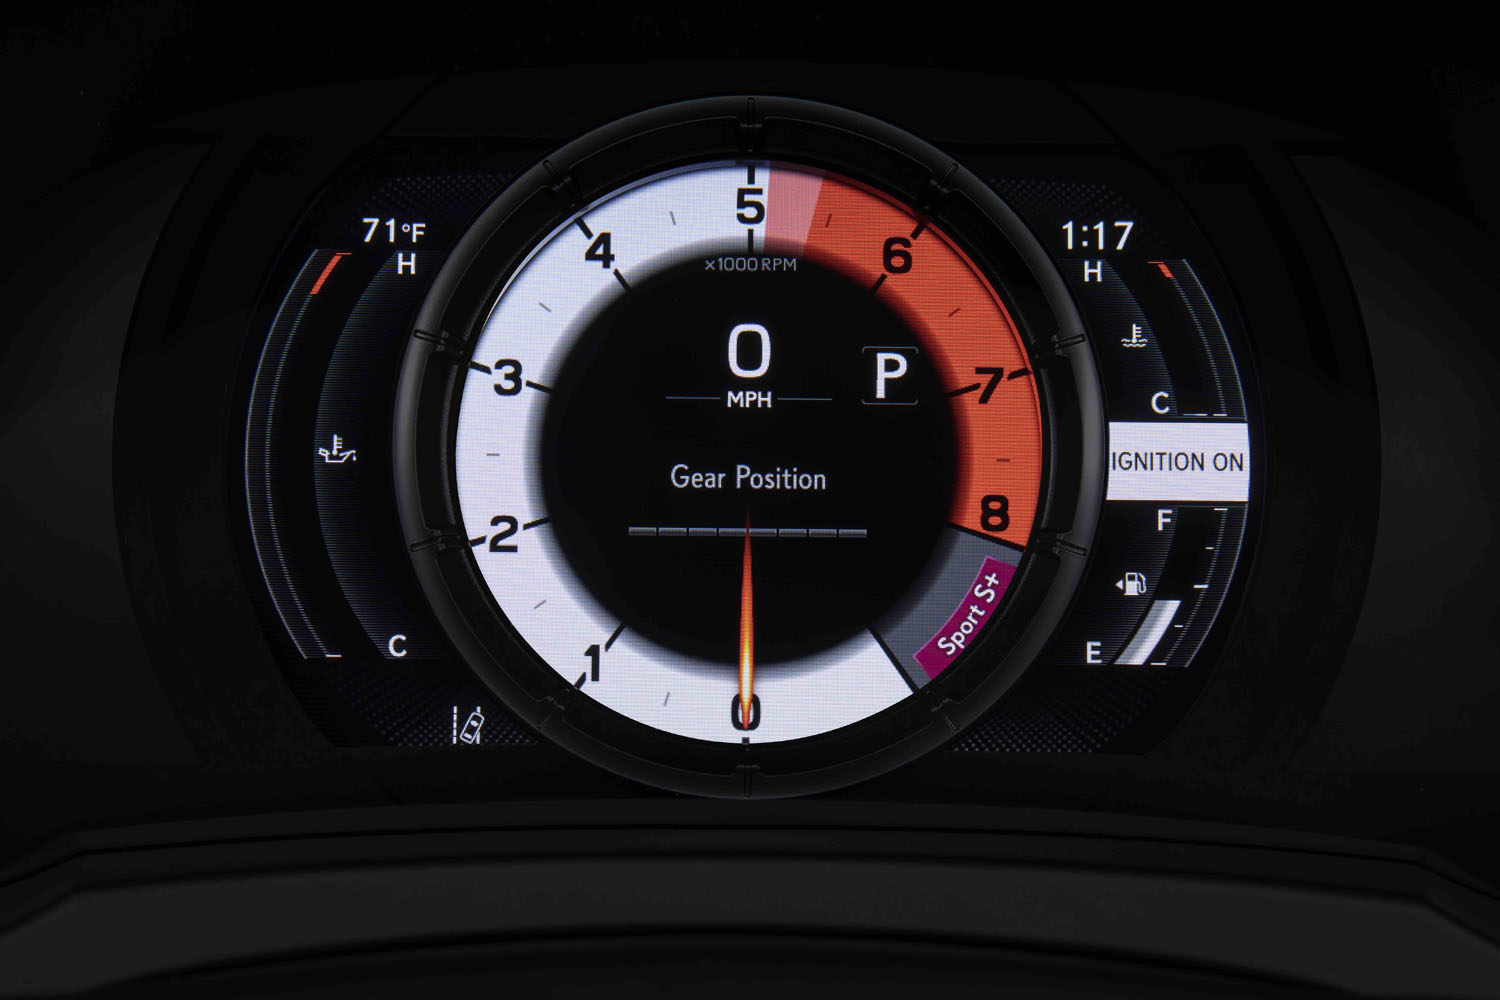 専用デザインの8インチTFT液晶式メーターは、走行モードにより表示グラフィックが変化する。写真は「スポーツS＋」モードの状態。